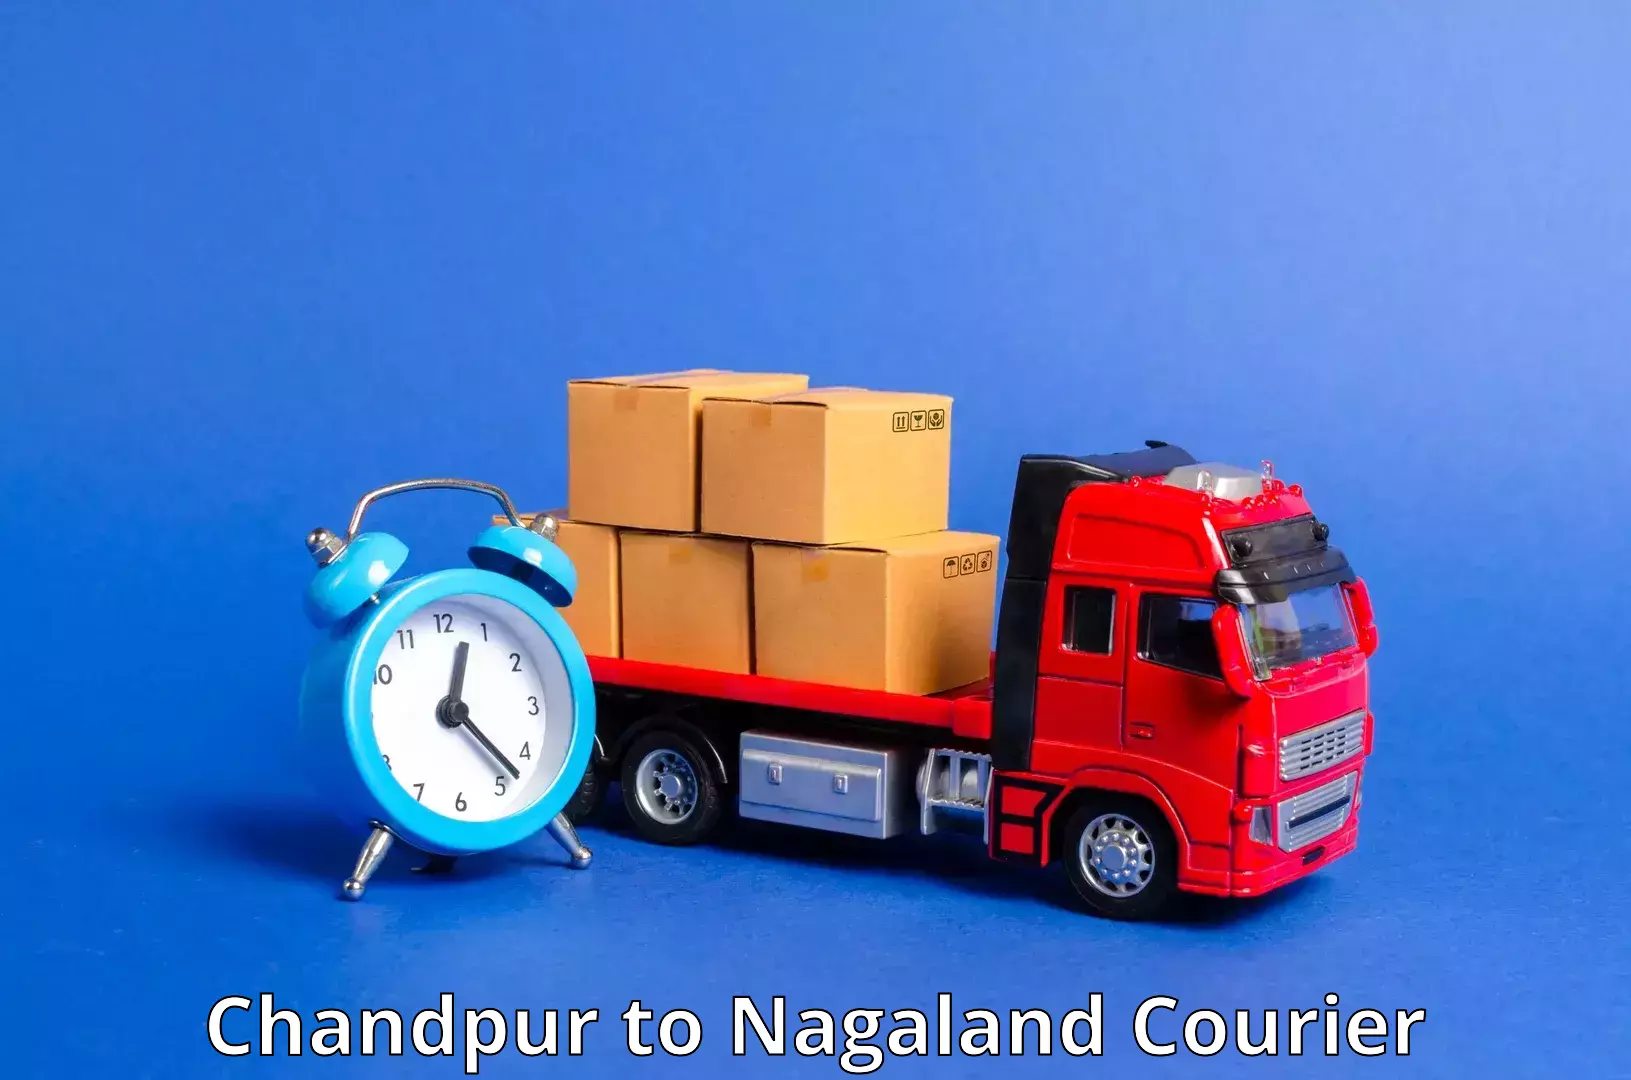 International parcel service Chandpur to Peren